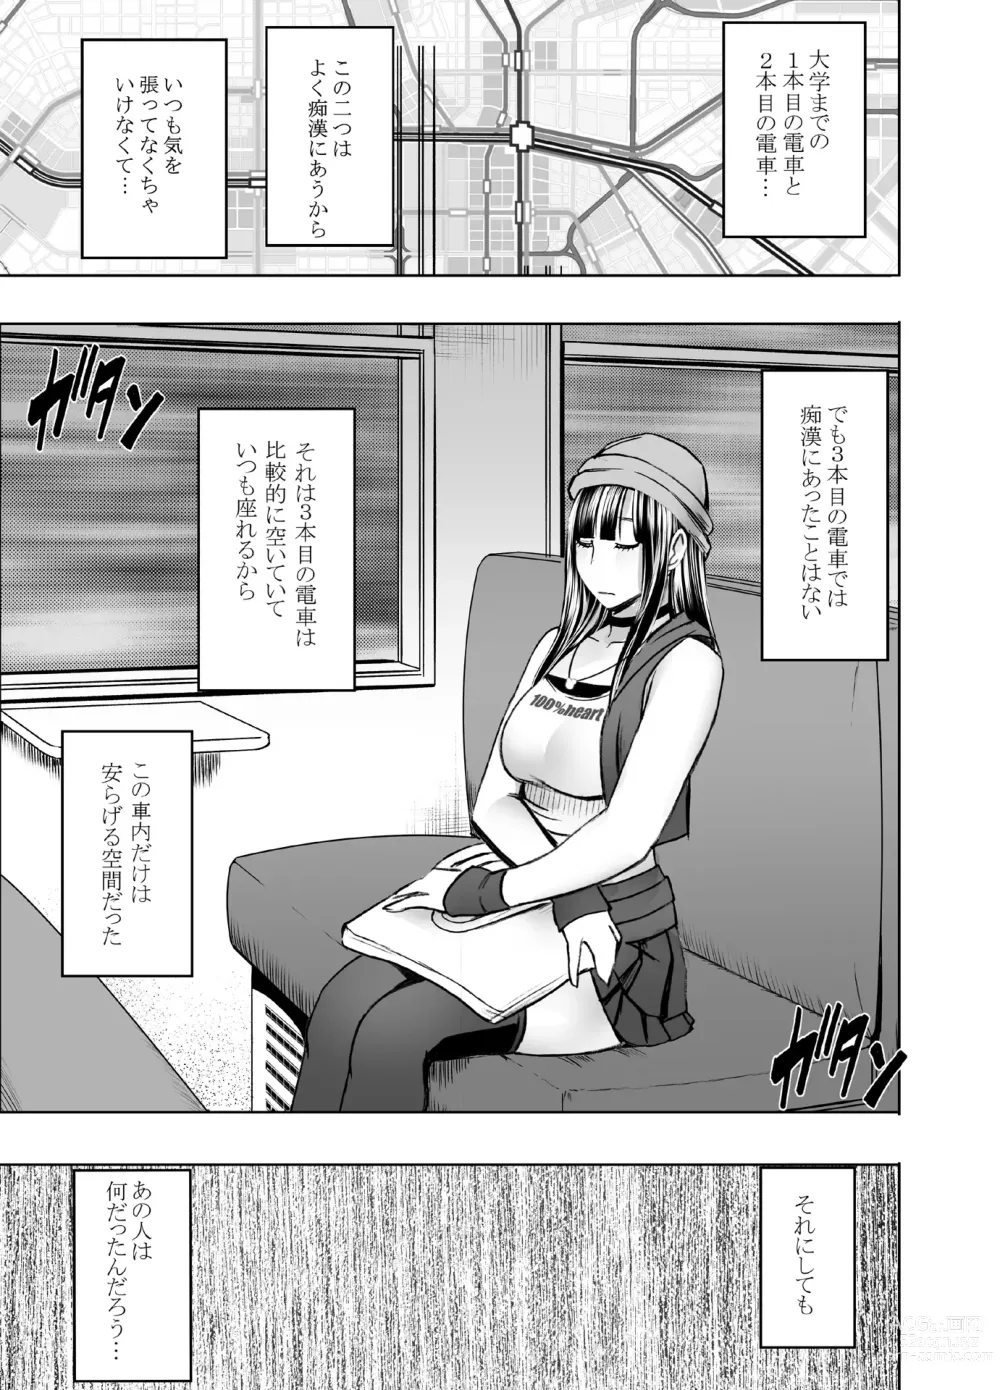 Page 29 of doujinshi Virgin Train R